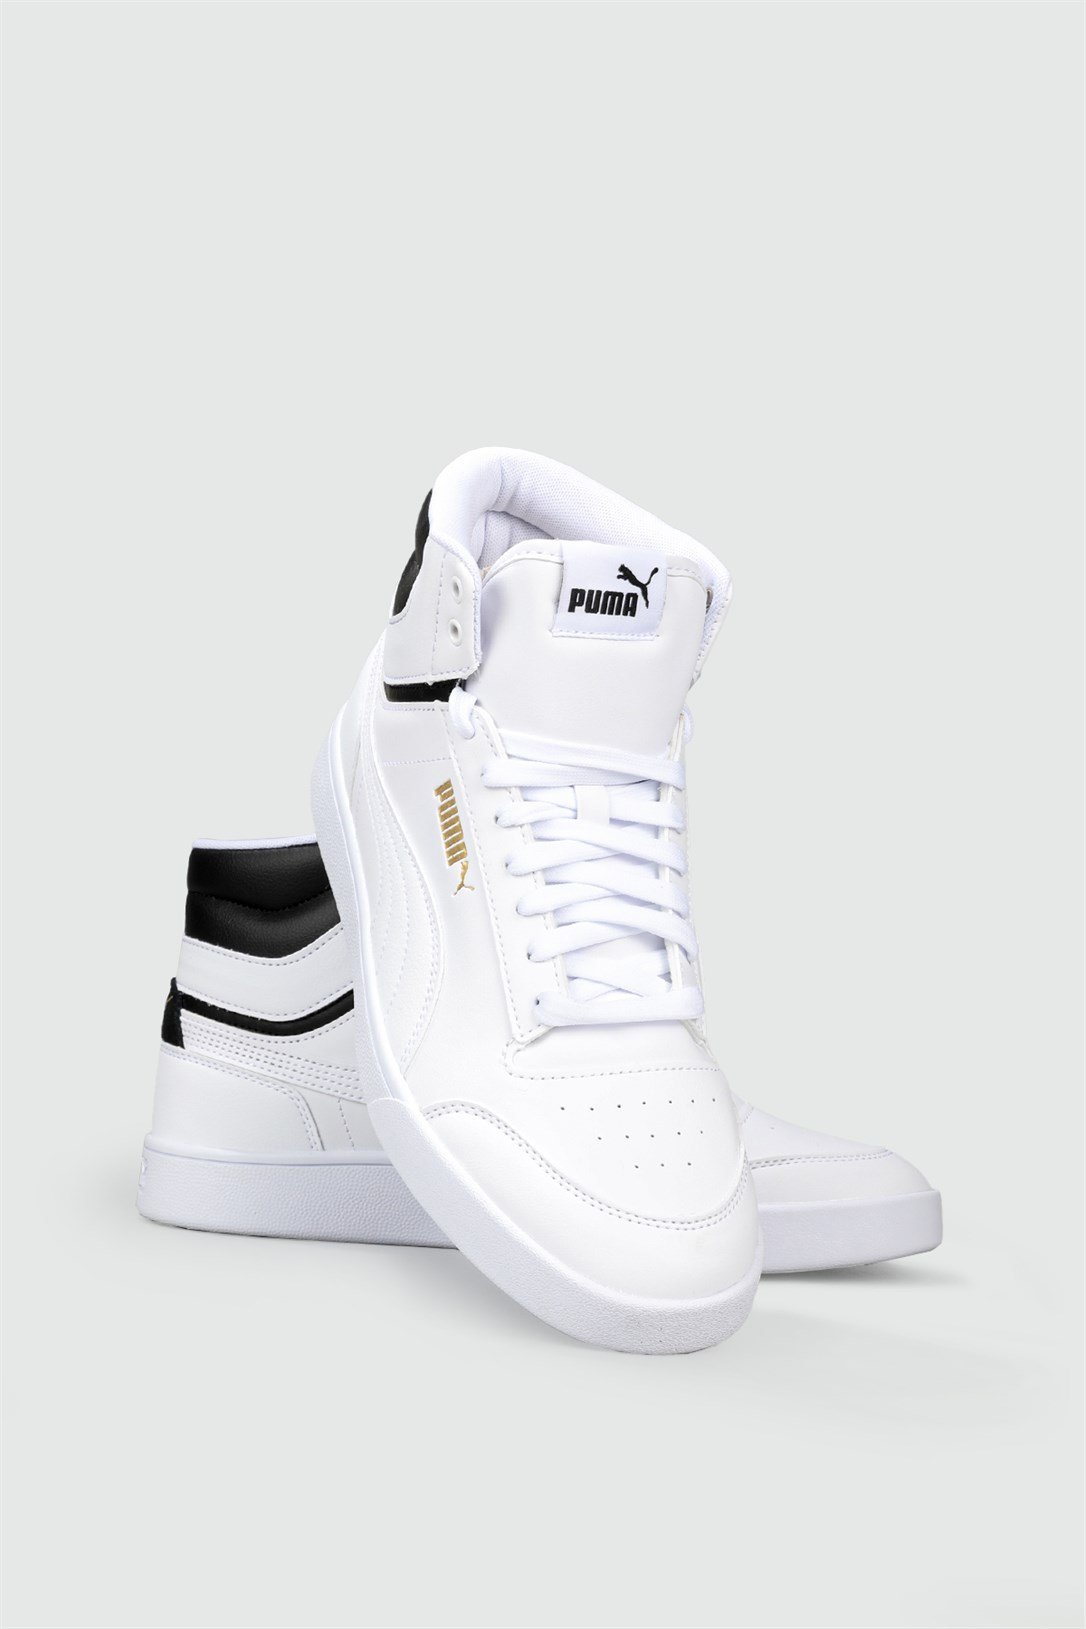 Puma Bilekten Boğazlı Basket Beyaz Siyah Erkek Spor Ayakkabı 380748-01 |  Ayakkabı City